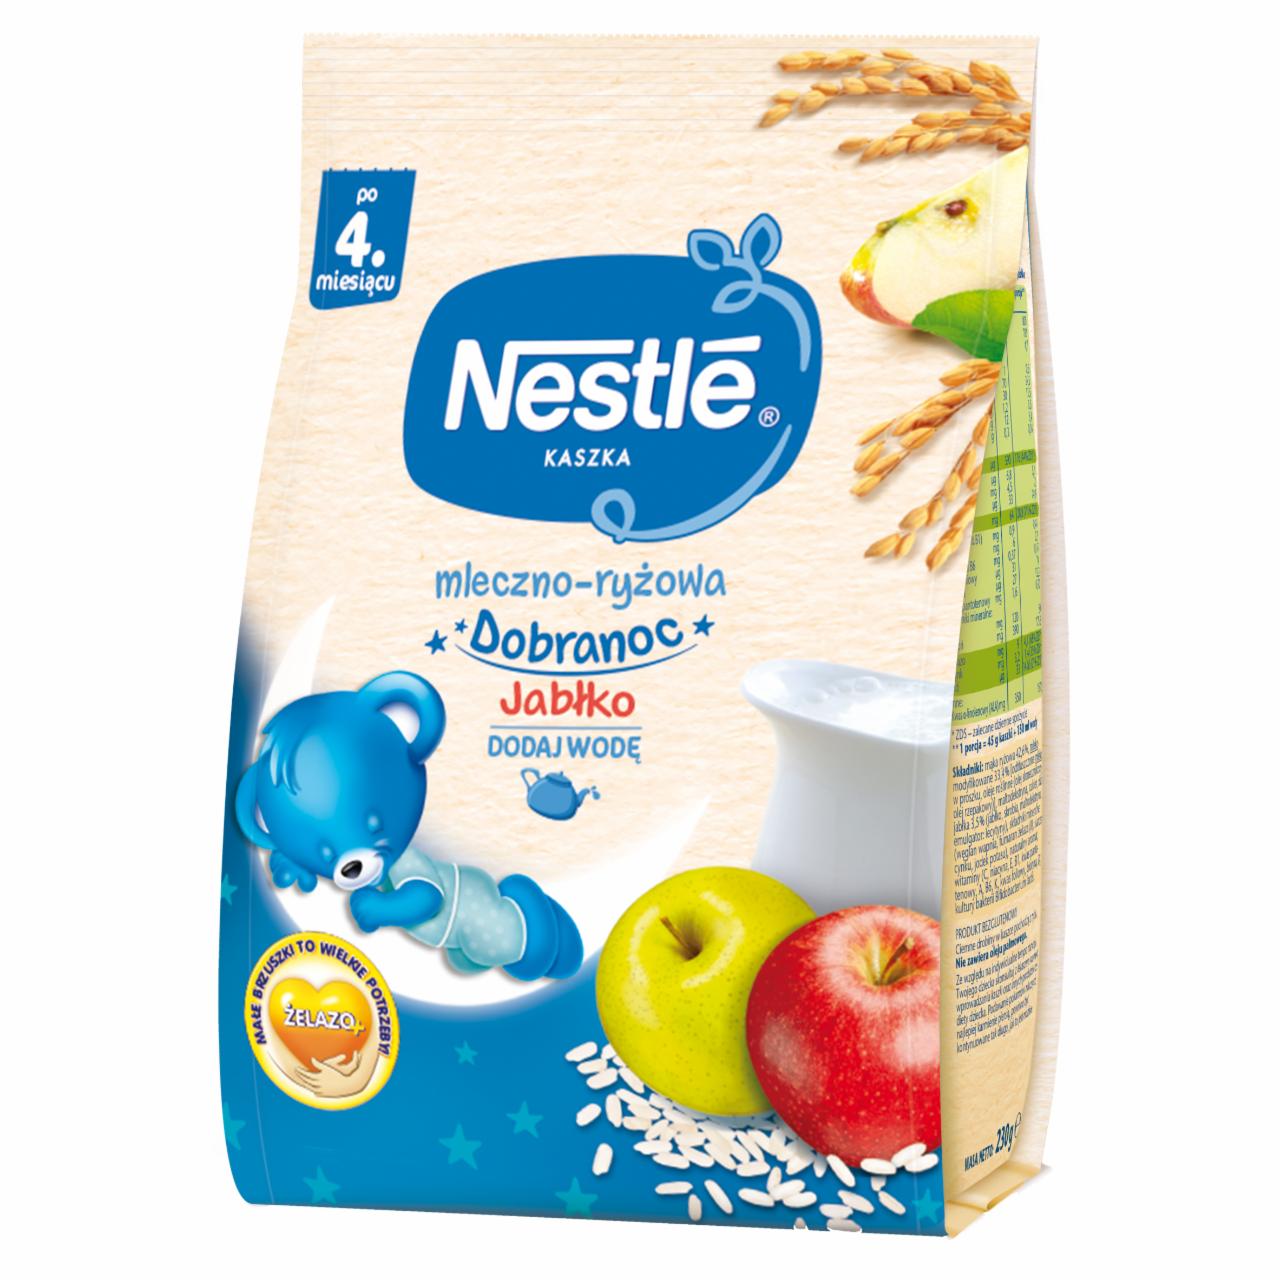 Zdjęcia - Nestlé Kaszka dobranoc mleczno-ryżowa jabłko dla niemowląt po 4. miesiącu 230 g